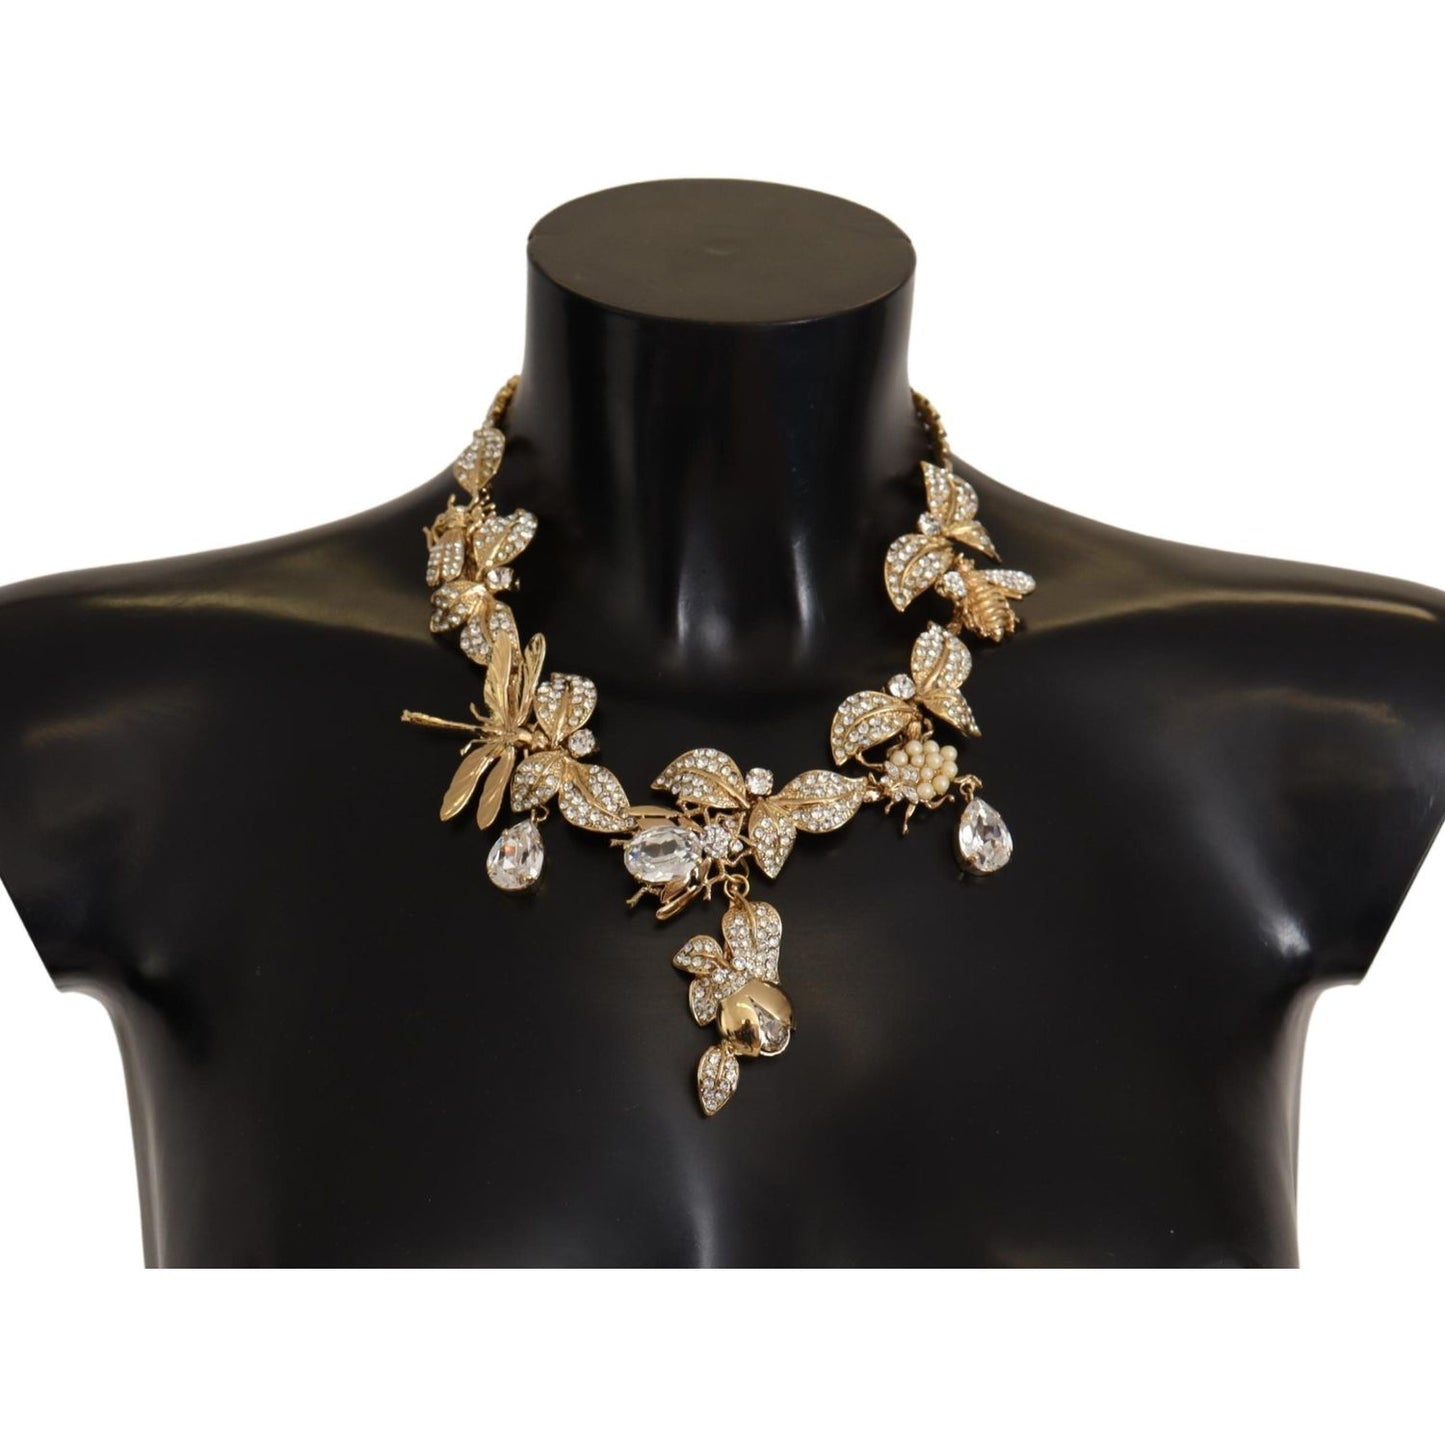 Dolce & Gabbana Elegant Sicily Floral Bug Statement Necklace gold-brass-floral-sicily-crystal-statement-necklace WOMAN NECKLACE IMG_1863-scaled-e8f6f728-557.jpg